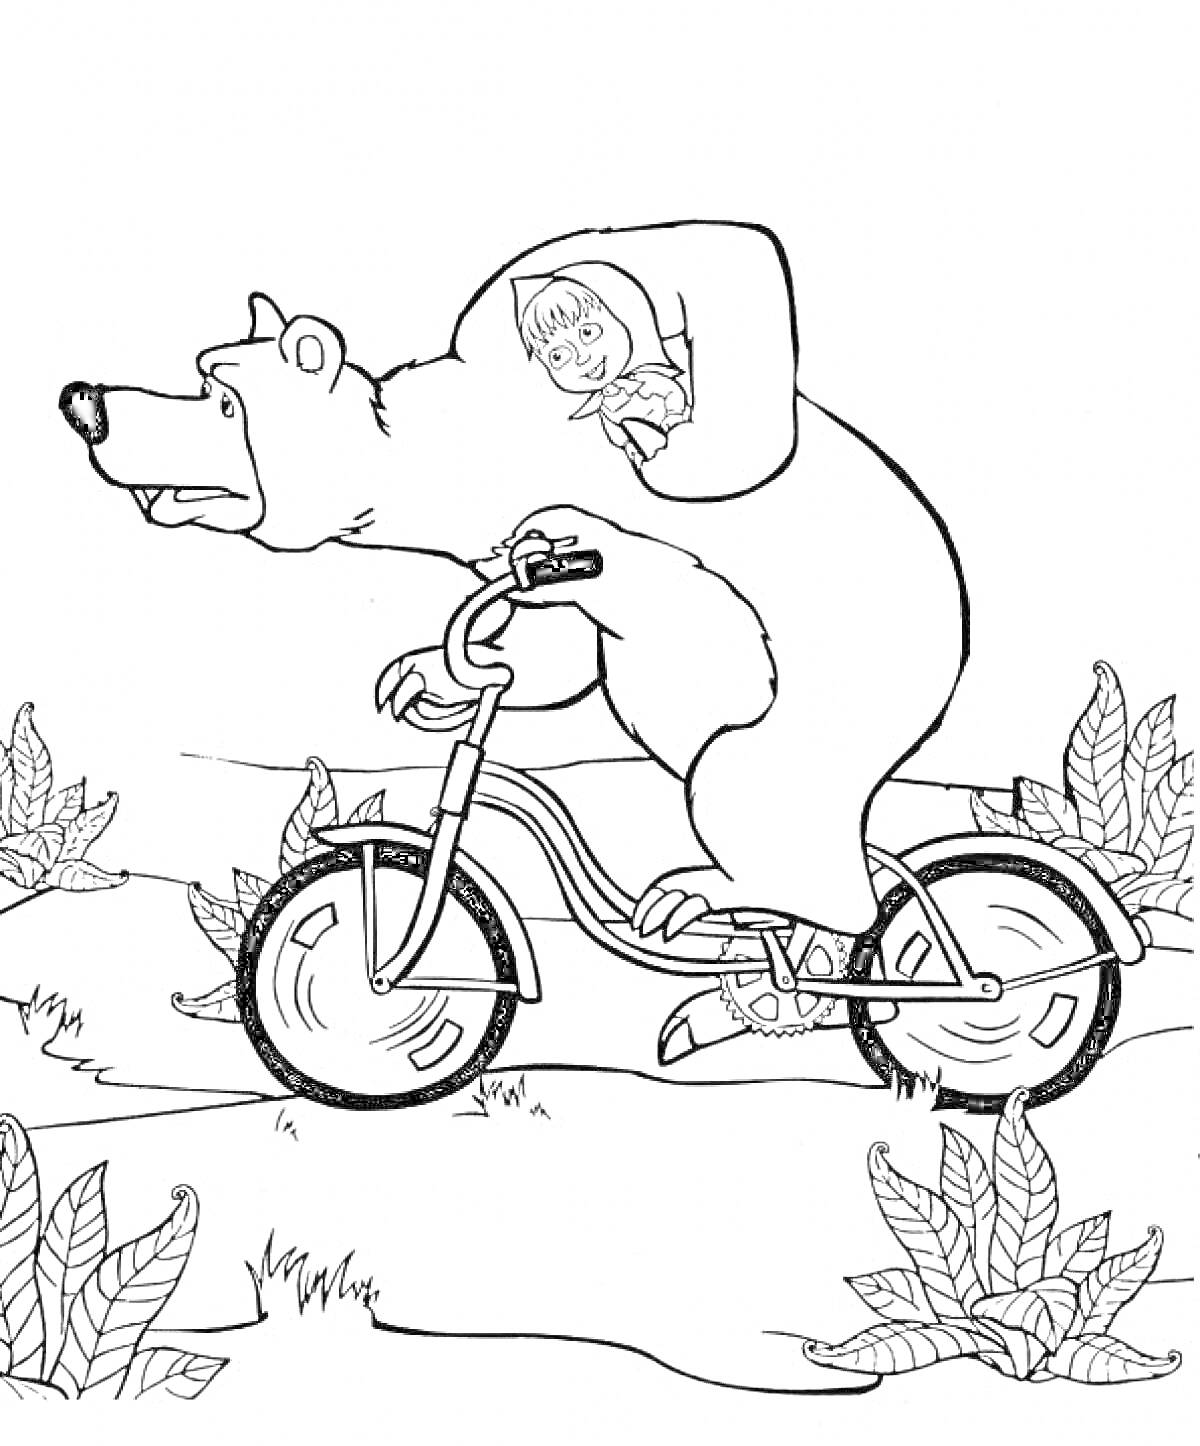 Маша на спине Медведя, едущего на велосипеде, кусты на заднем плане